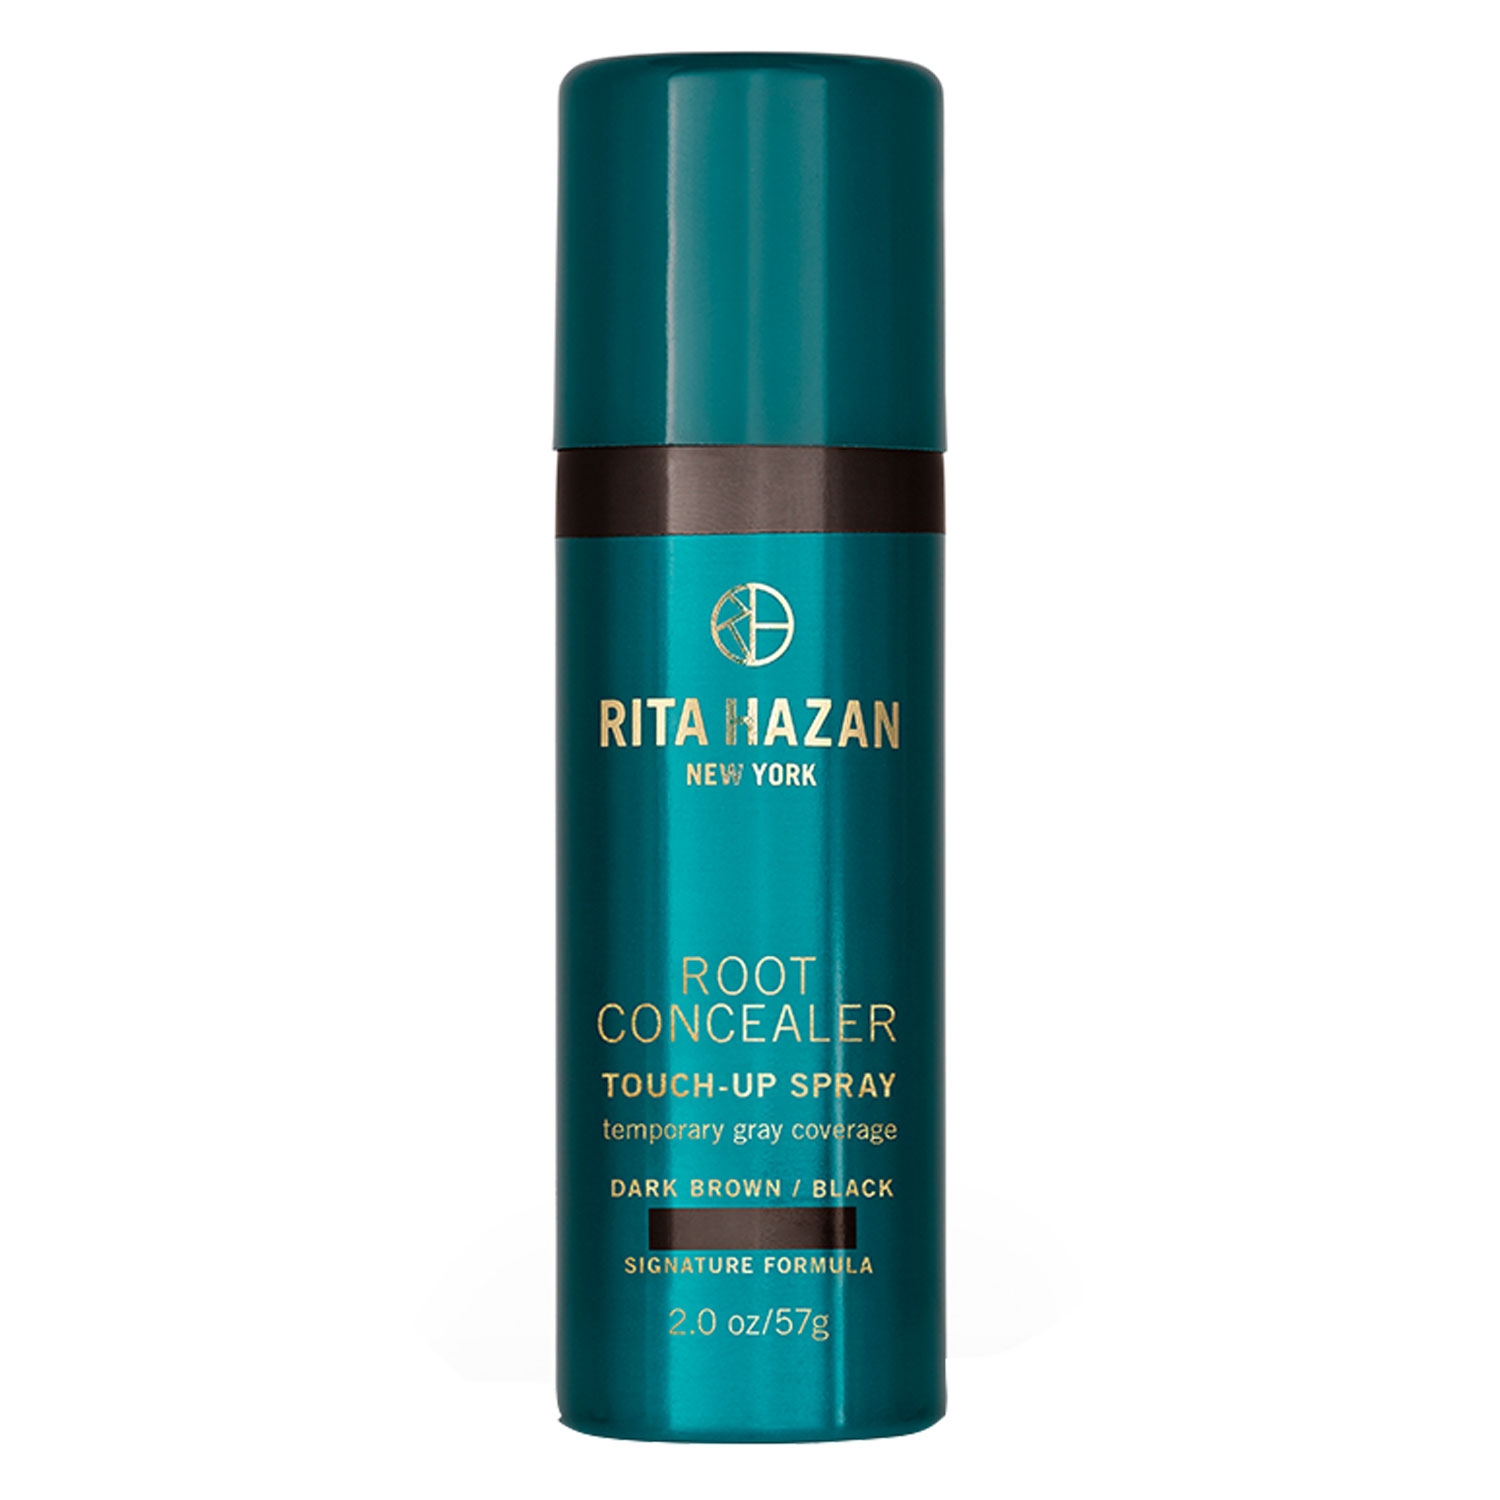 Produktbild von Rita Hazan New York - Root Concealer Touch-Up Spray Dark Brown/Black